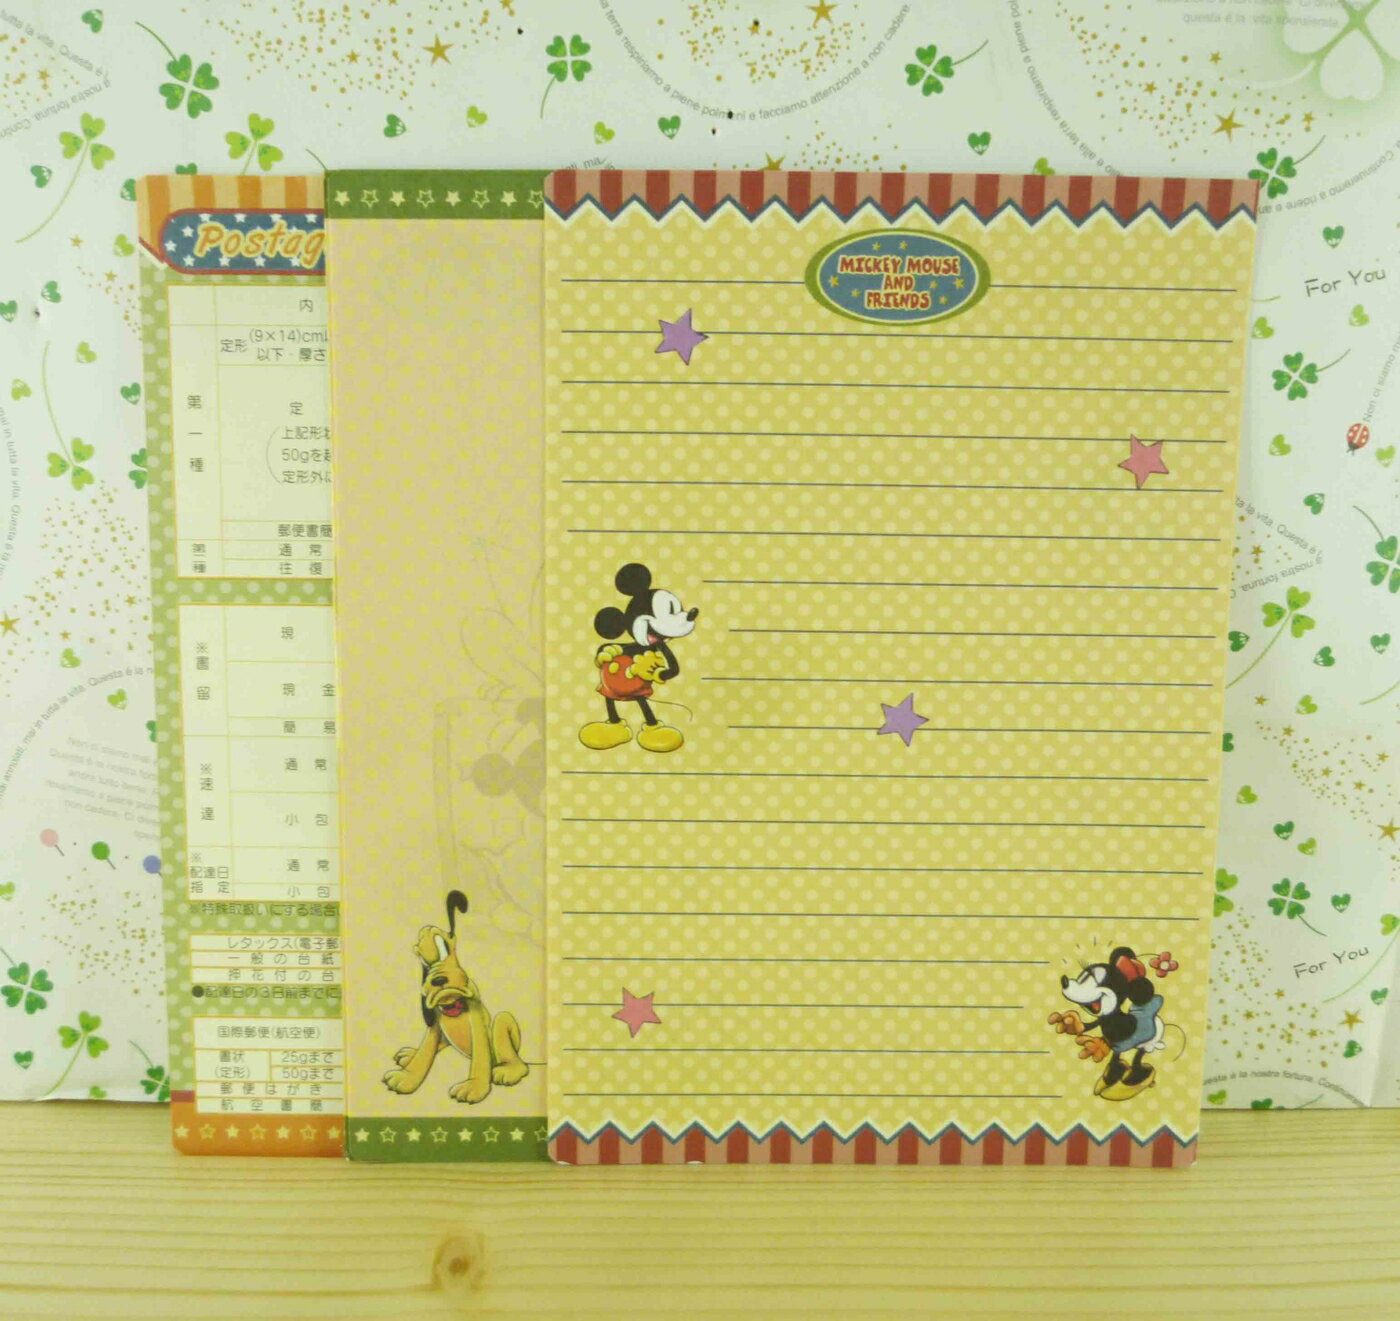 【震撼精品百貨】Micky Mouse 米奇/米妮 便條-咖啡黃條顏色 震撼日式精品百貨